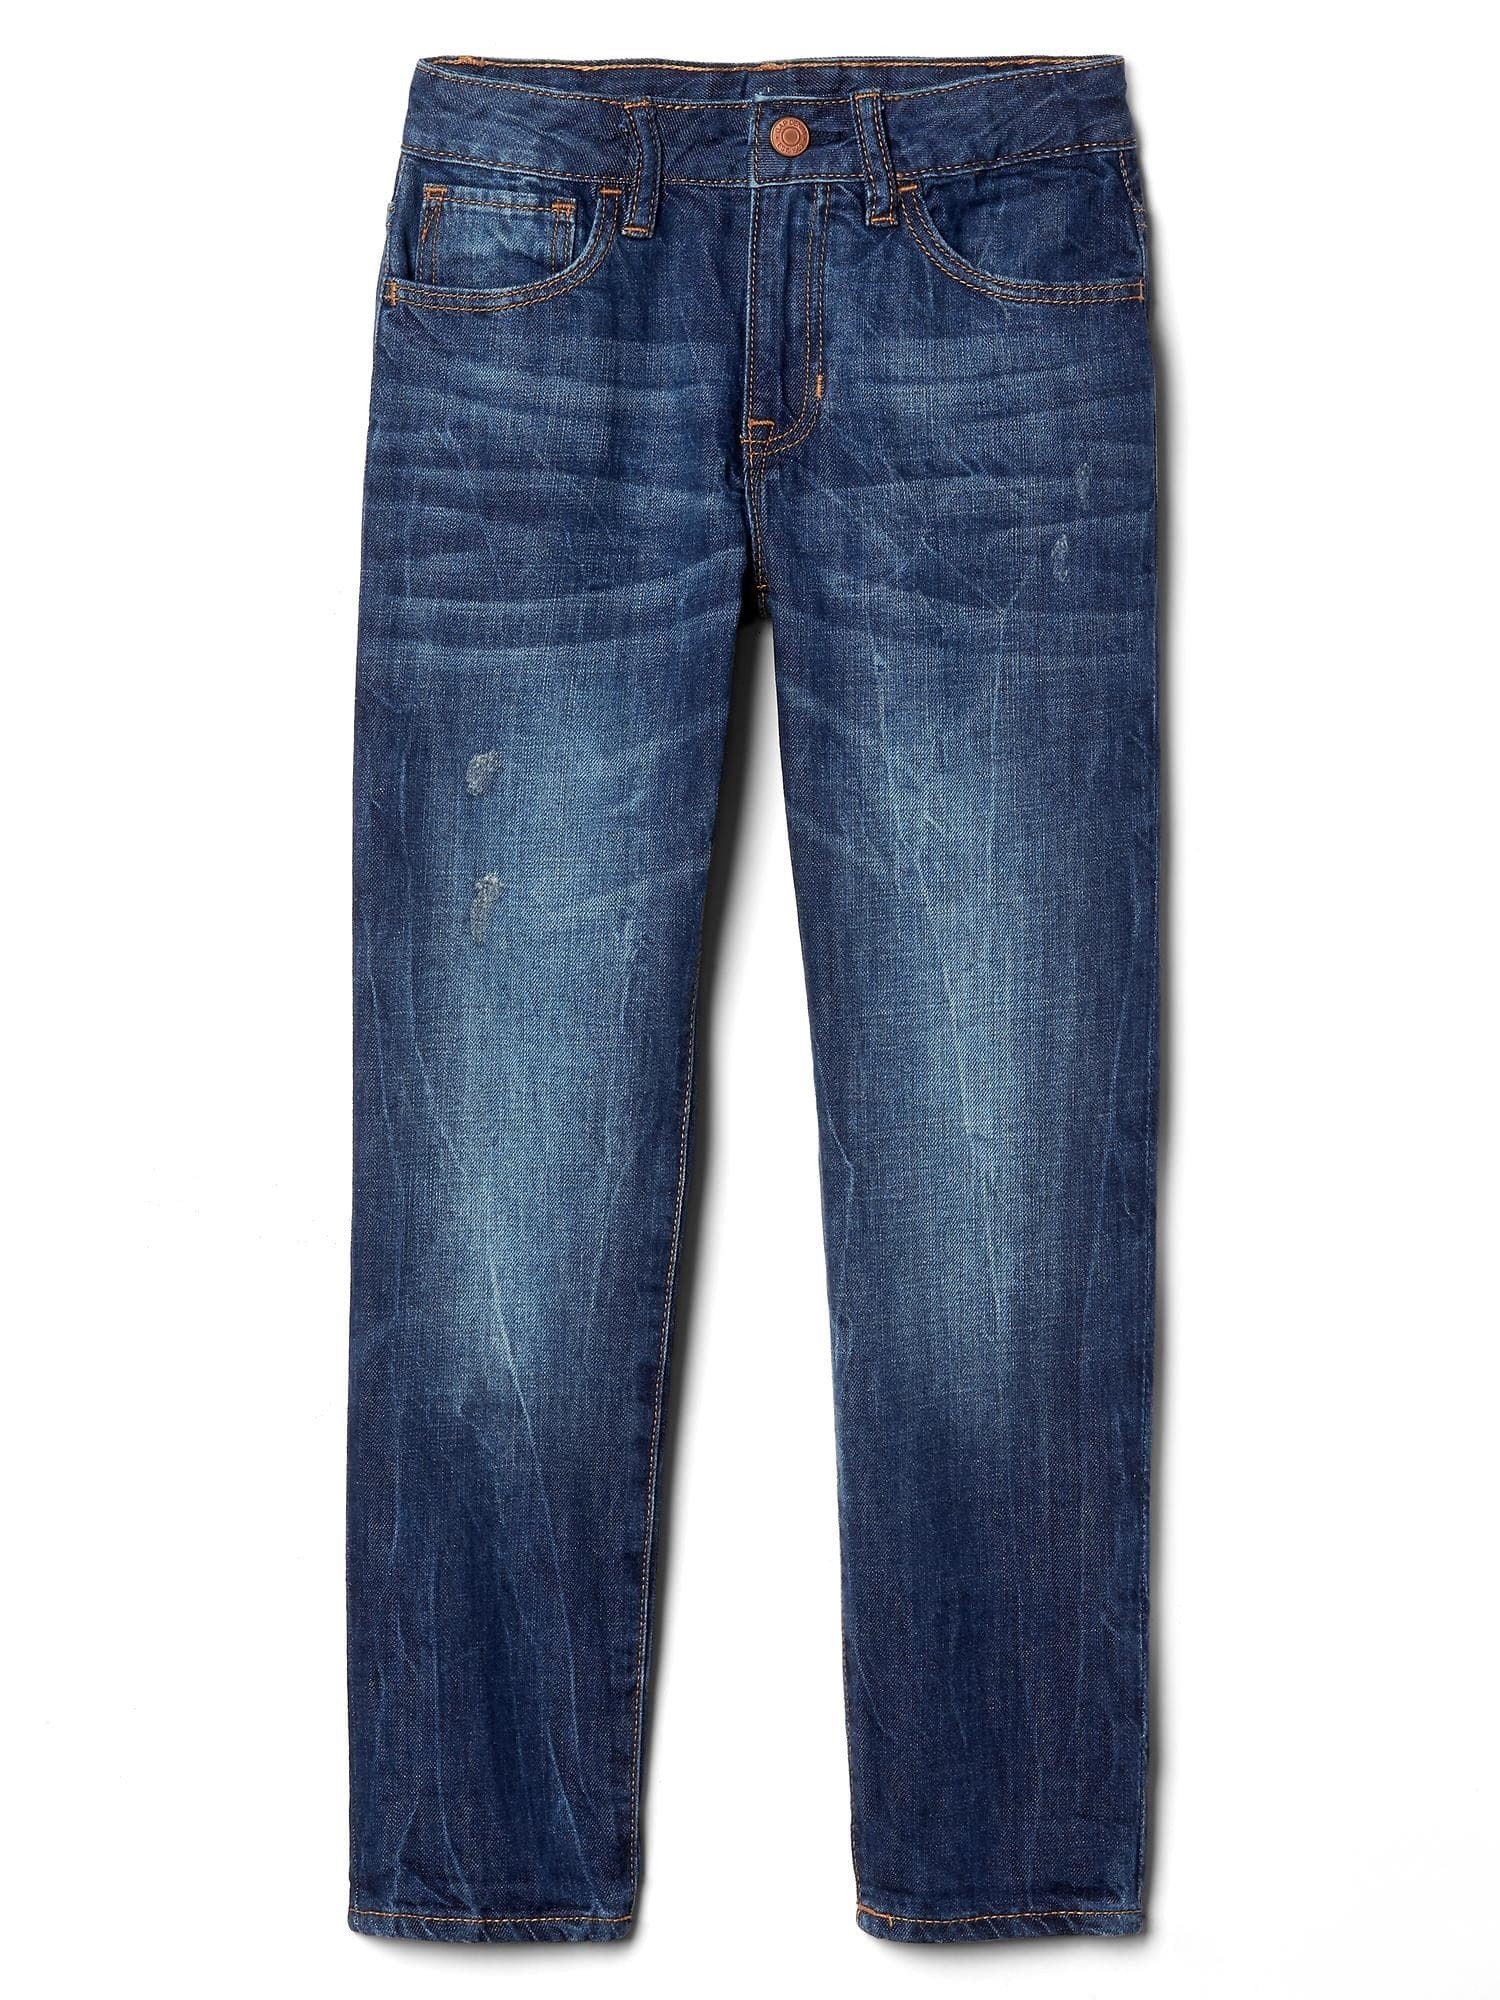 Girlfriend jean pantolon product image